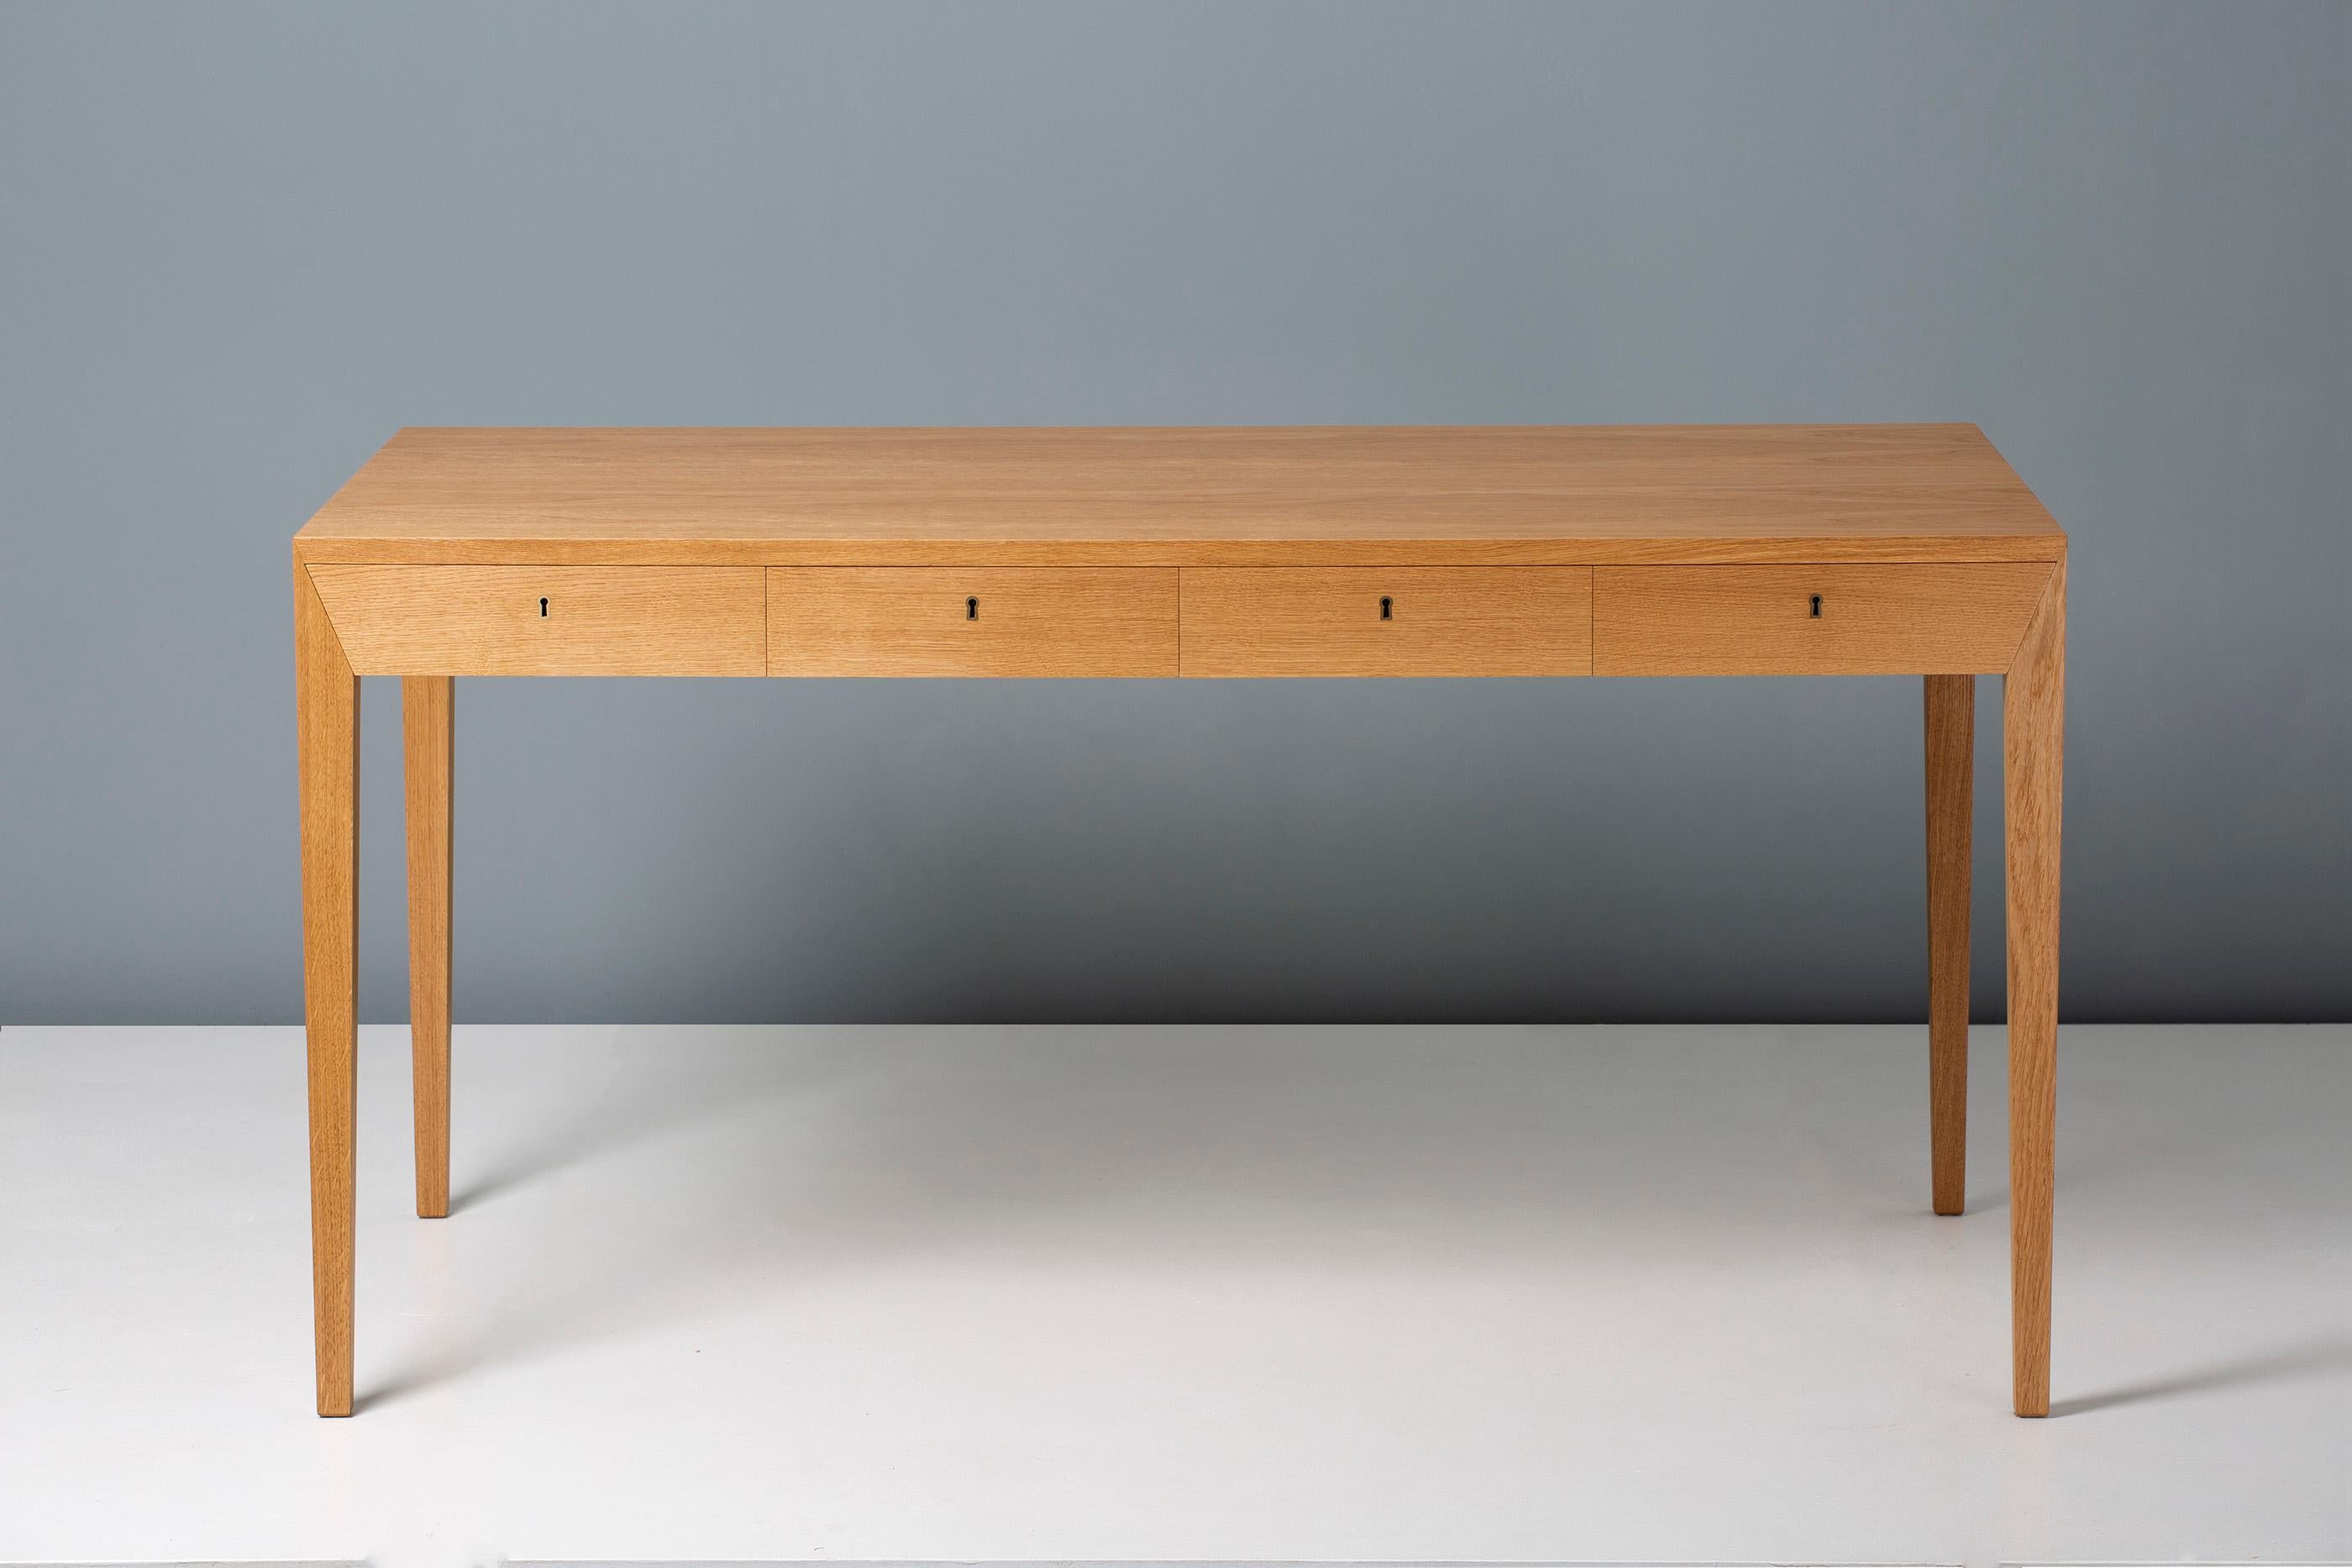 Der legendäre Schreibtisch Model 36 des dänischen Designers Severin Hansen wurde 1958 entworfen und im selben Jahr auf der jährlichen Ausstellung der Cabinetmaker's Guild in Kopenhagen ausgestellt. Er wurde zu einem der begehrtesten und bekanntesten